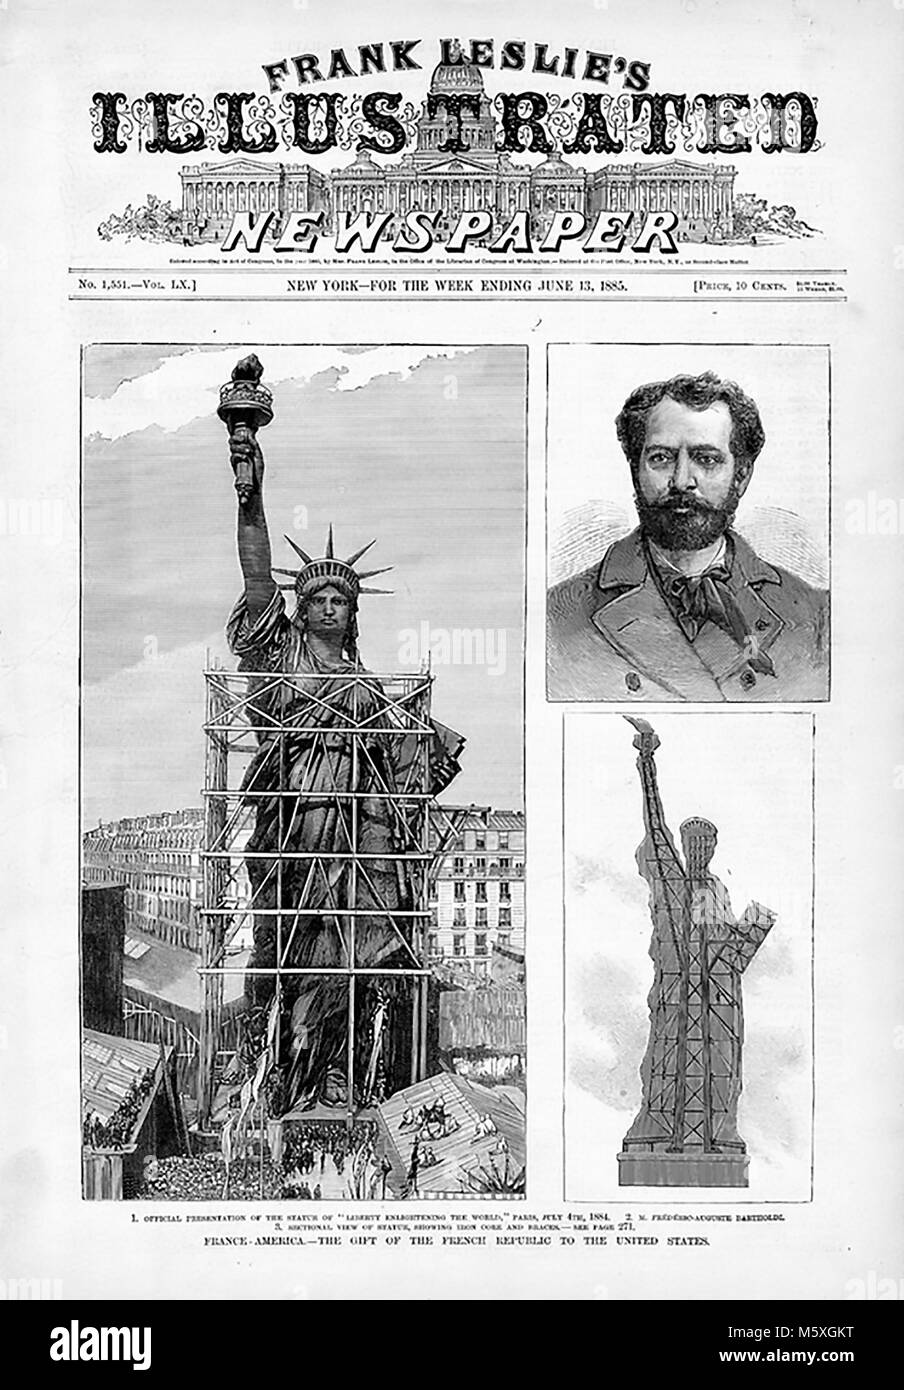 FREDERIC AUGUSTE BARTHOLDI (1834-1904), scultore francese che ha progettato la Statua della Libertà mostrato in costruzione al di fuori il suo studio a Parigi in questo giugno 1885 giornale americano. Foto Stock